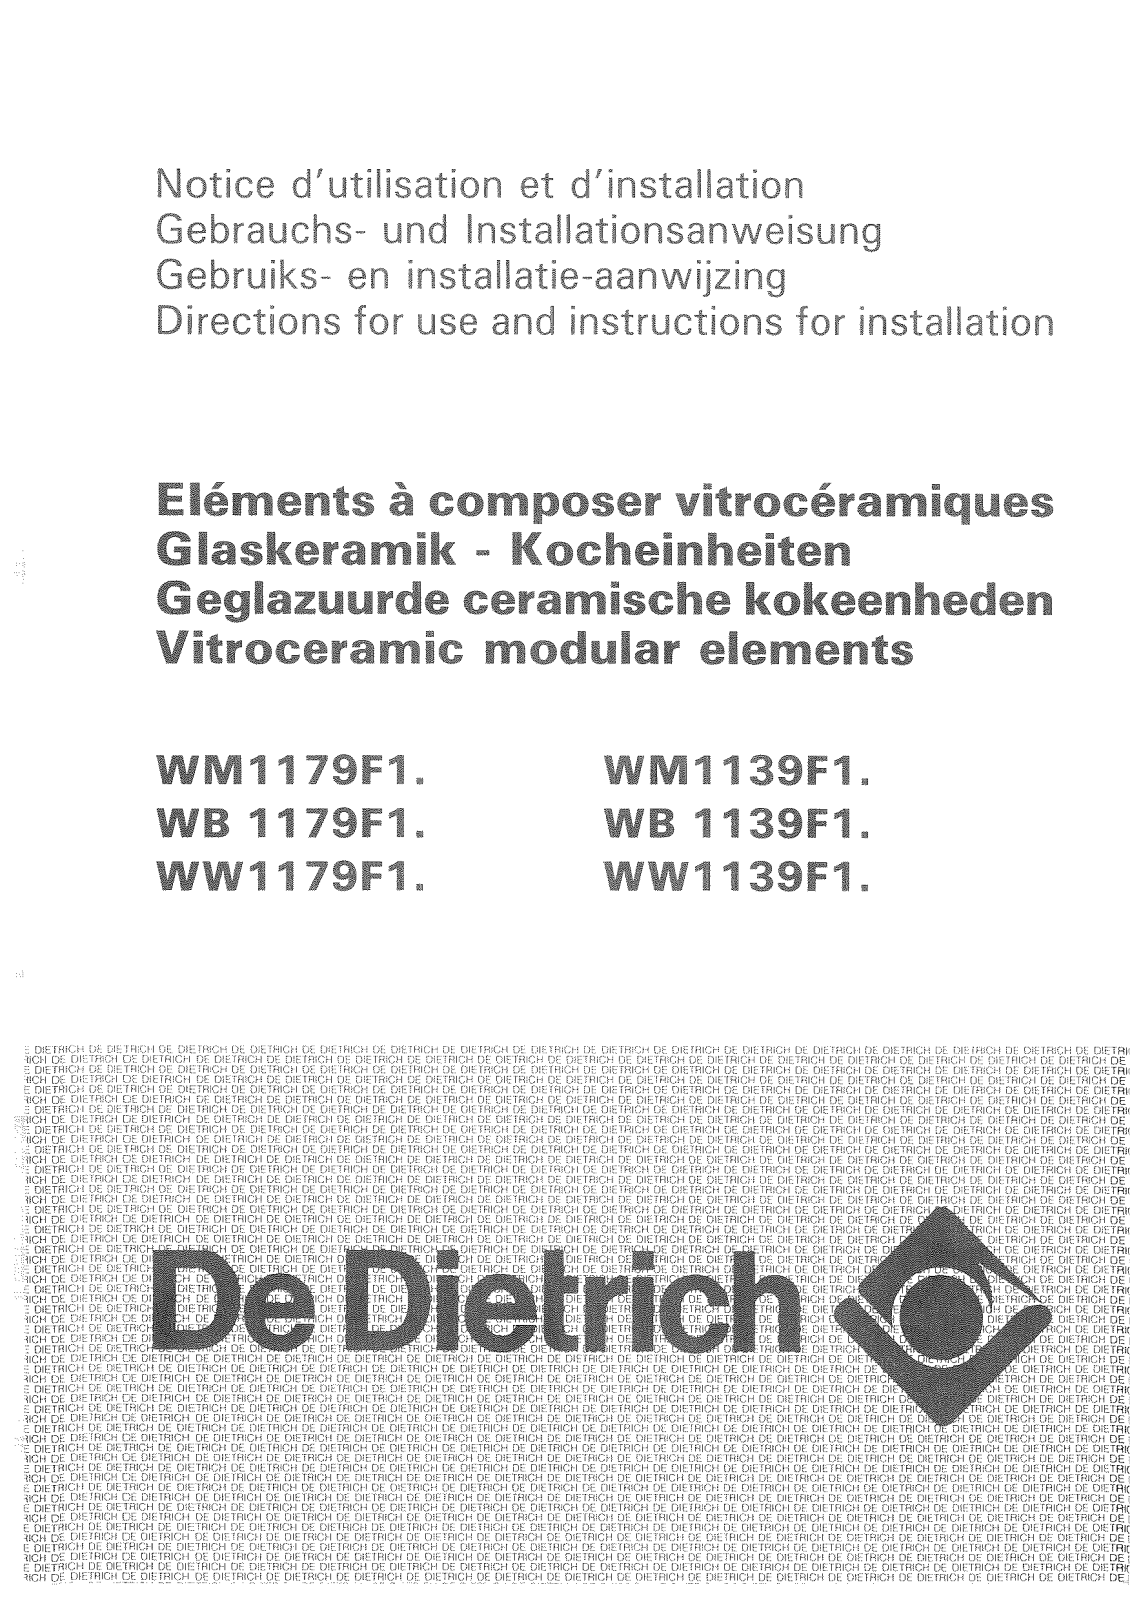 De dietrich WM1139F1, WM1179F1, WW1179F1, WW1139F1, WB1139F1 User Manual